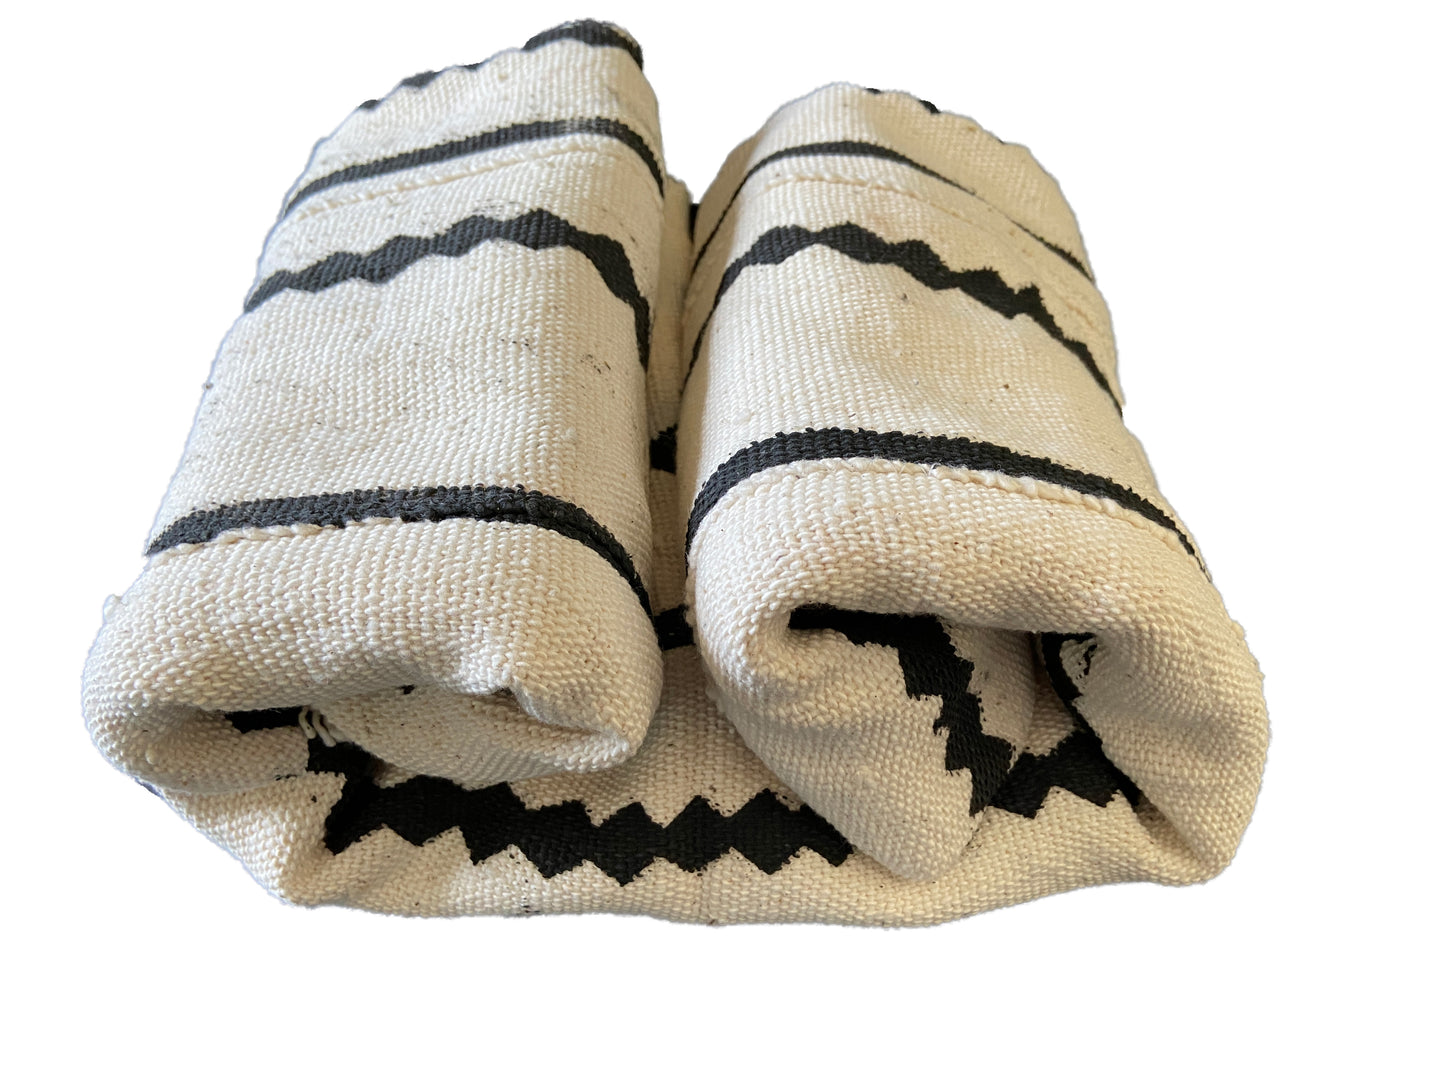 Lg Black & White Mud Cloth Textile Mali 39.5" by 67" #3394